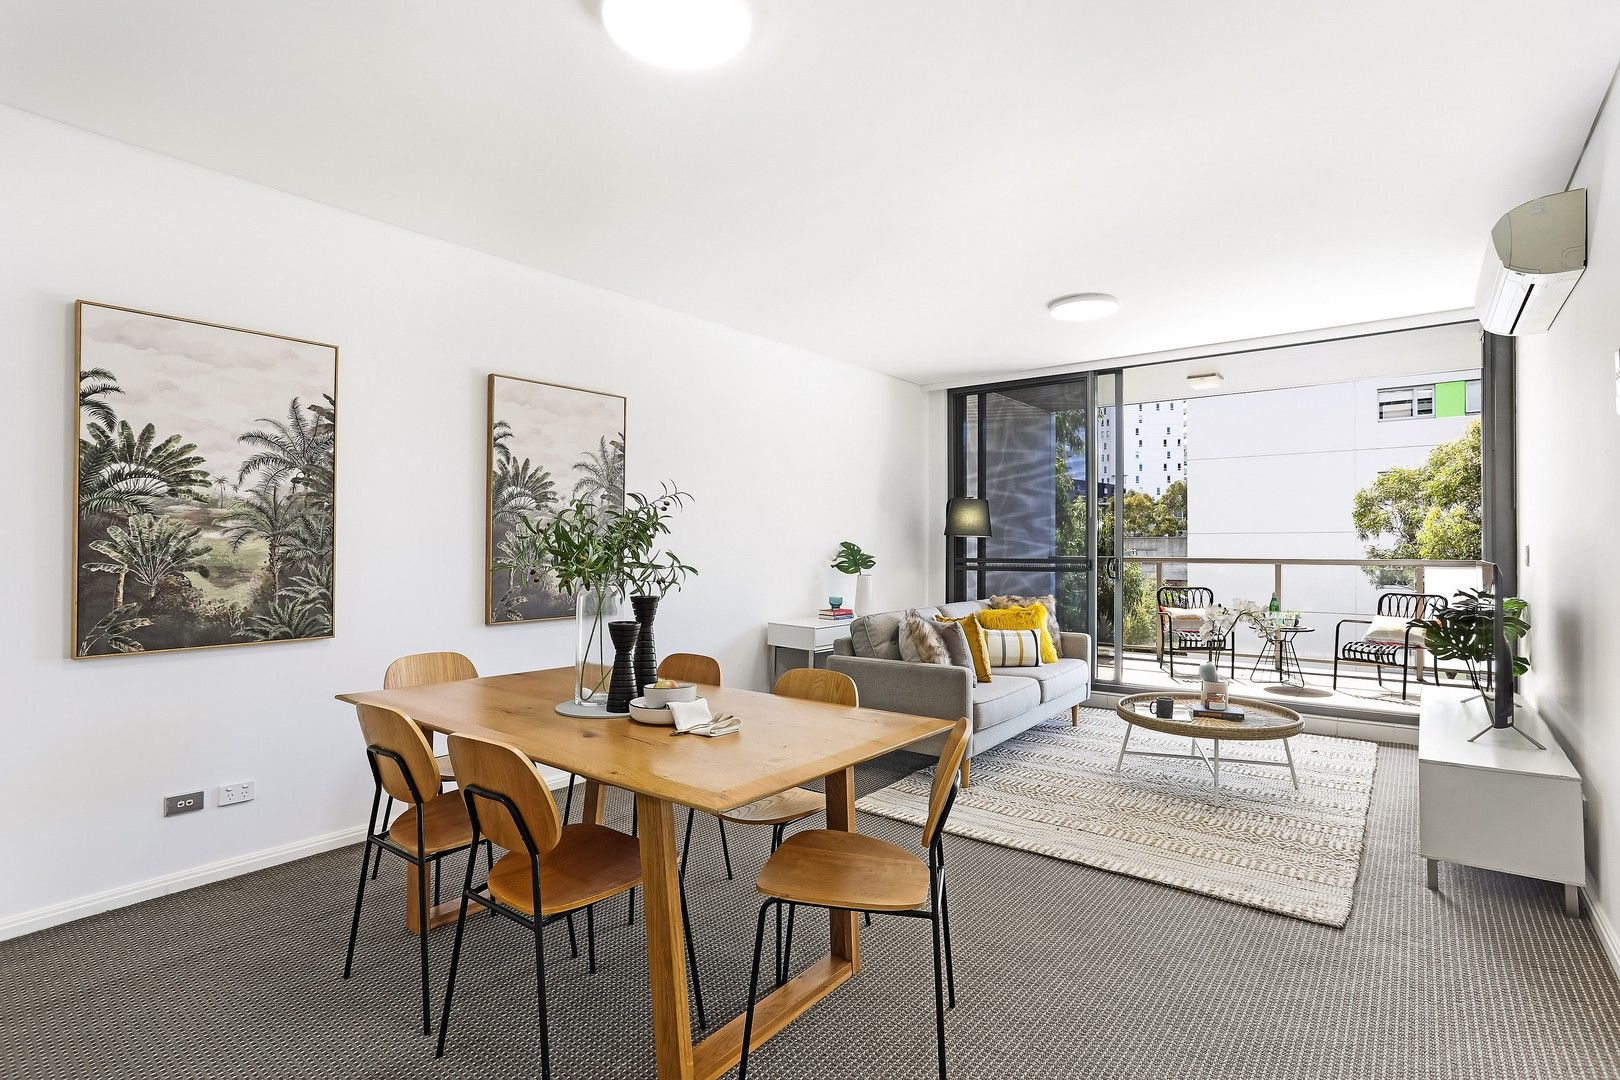 2 bedrooms Apartment / Unit / Flat in 524/5 Defries Avenue ZETLAND NSW, 2017